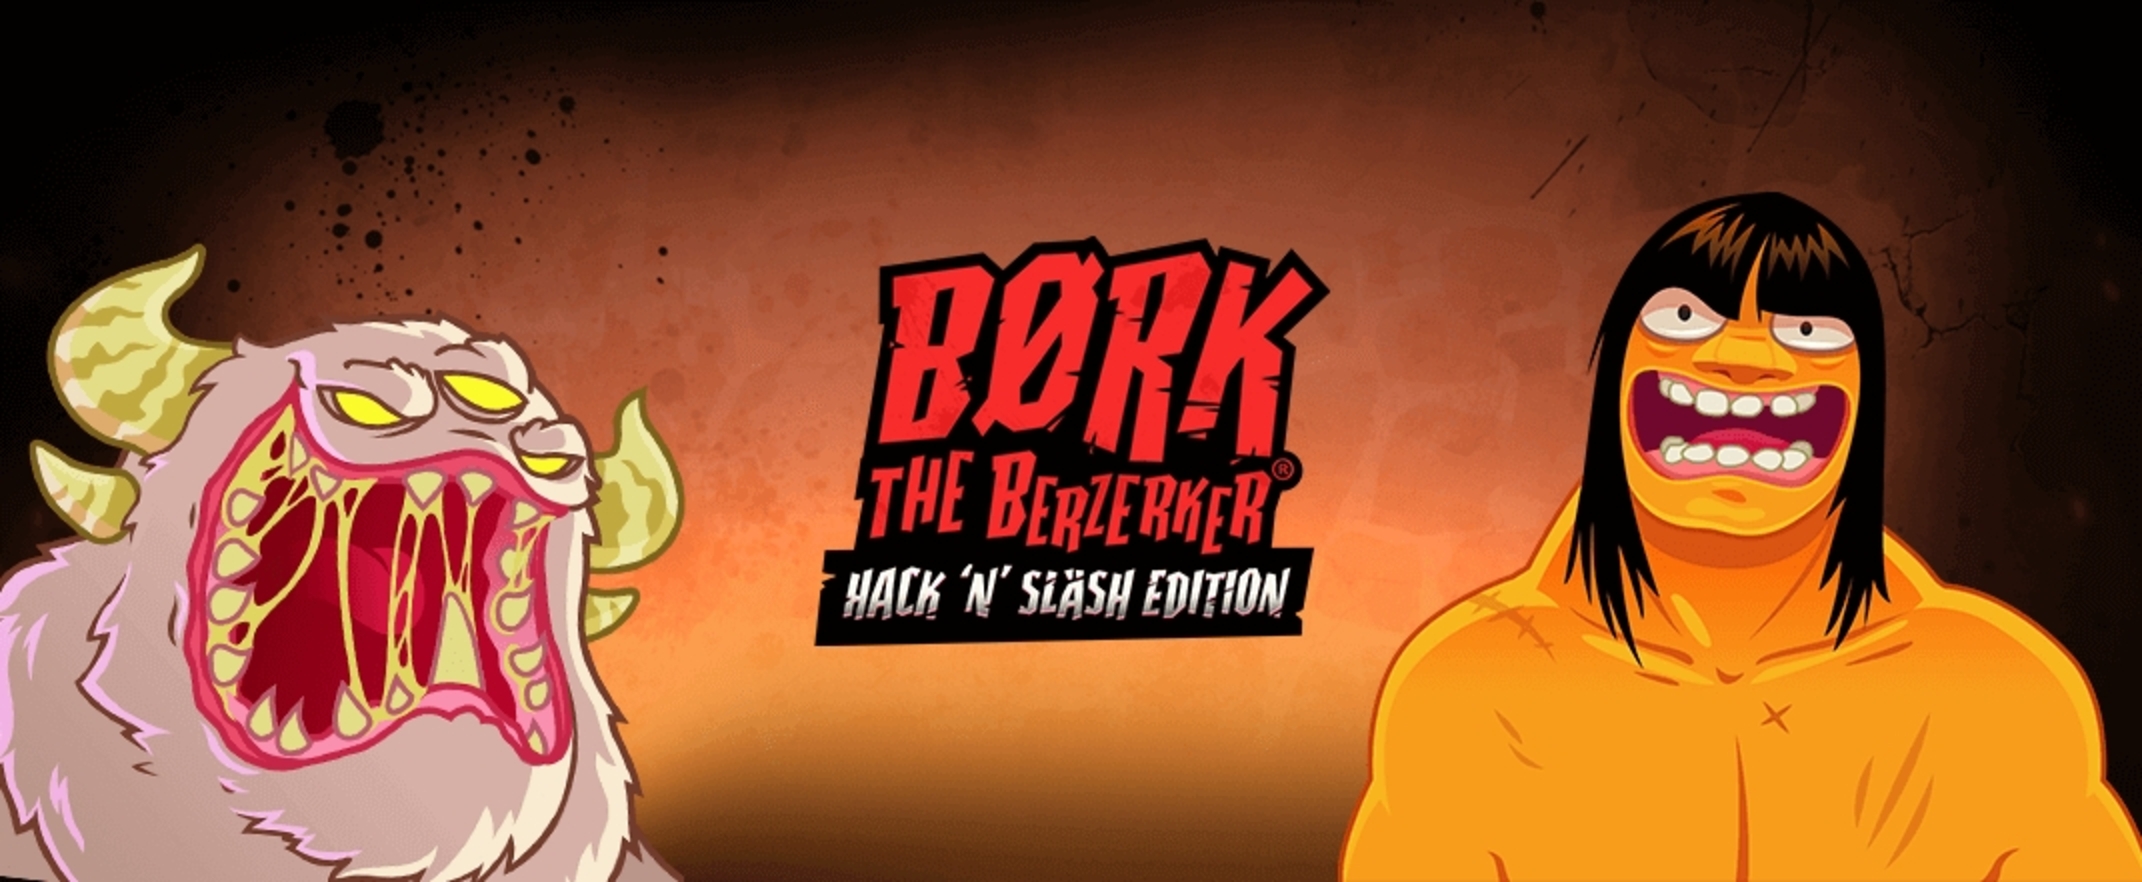 The Børk The Berzerker Online Slot Demo Game by Thunderkick